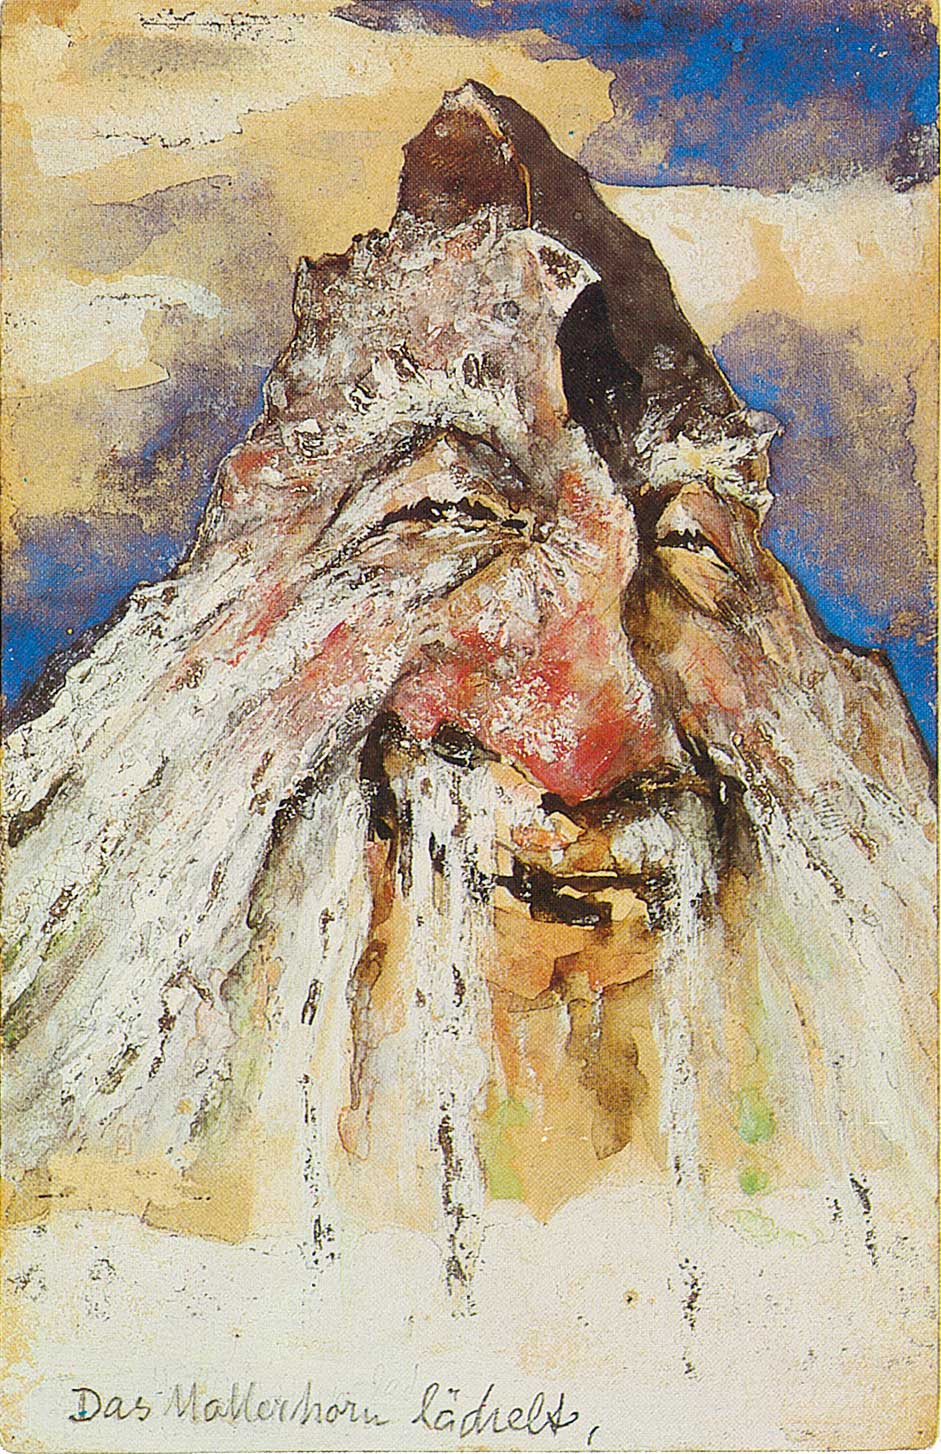 Emil Nolde, Das Matterhorn lächelt, Bergpostkarte, 1896. © Nolde-Stiftung Seebüll.